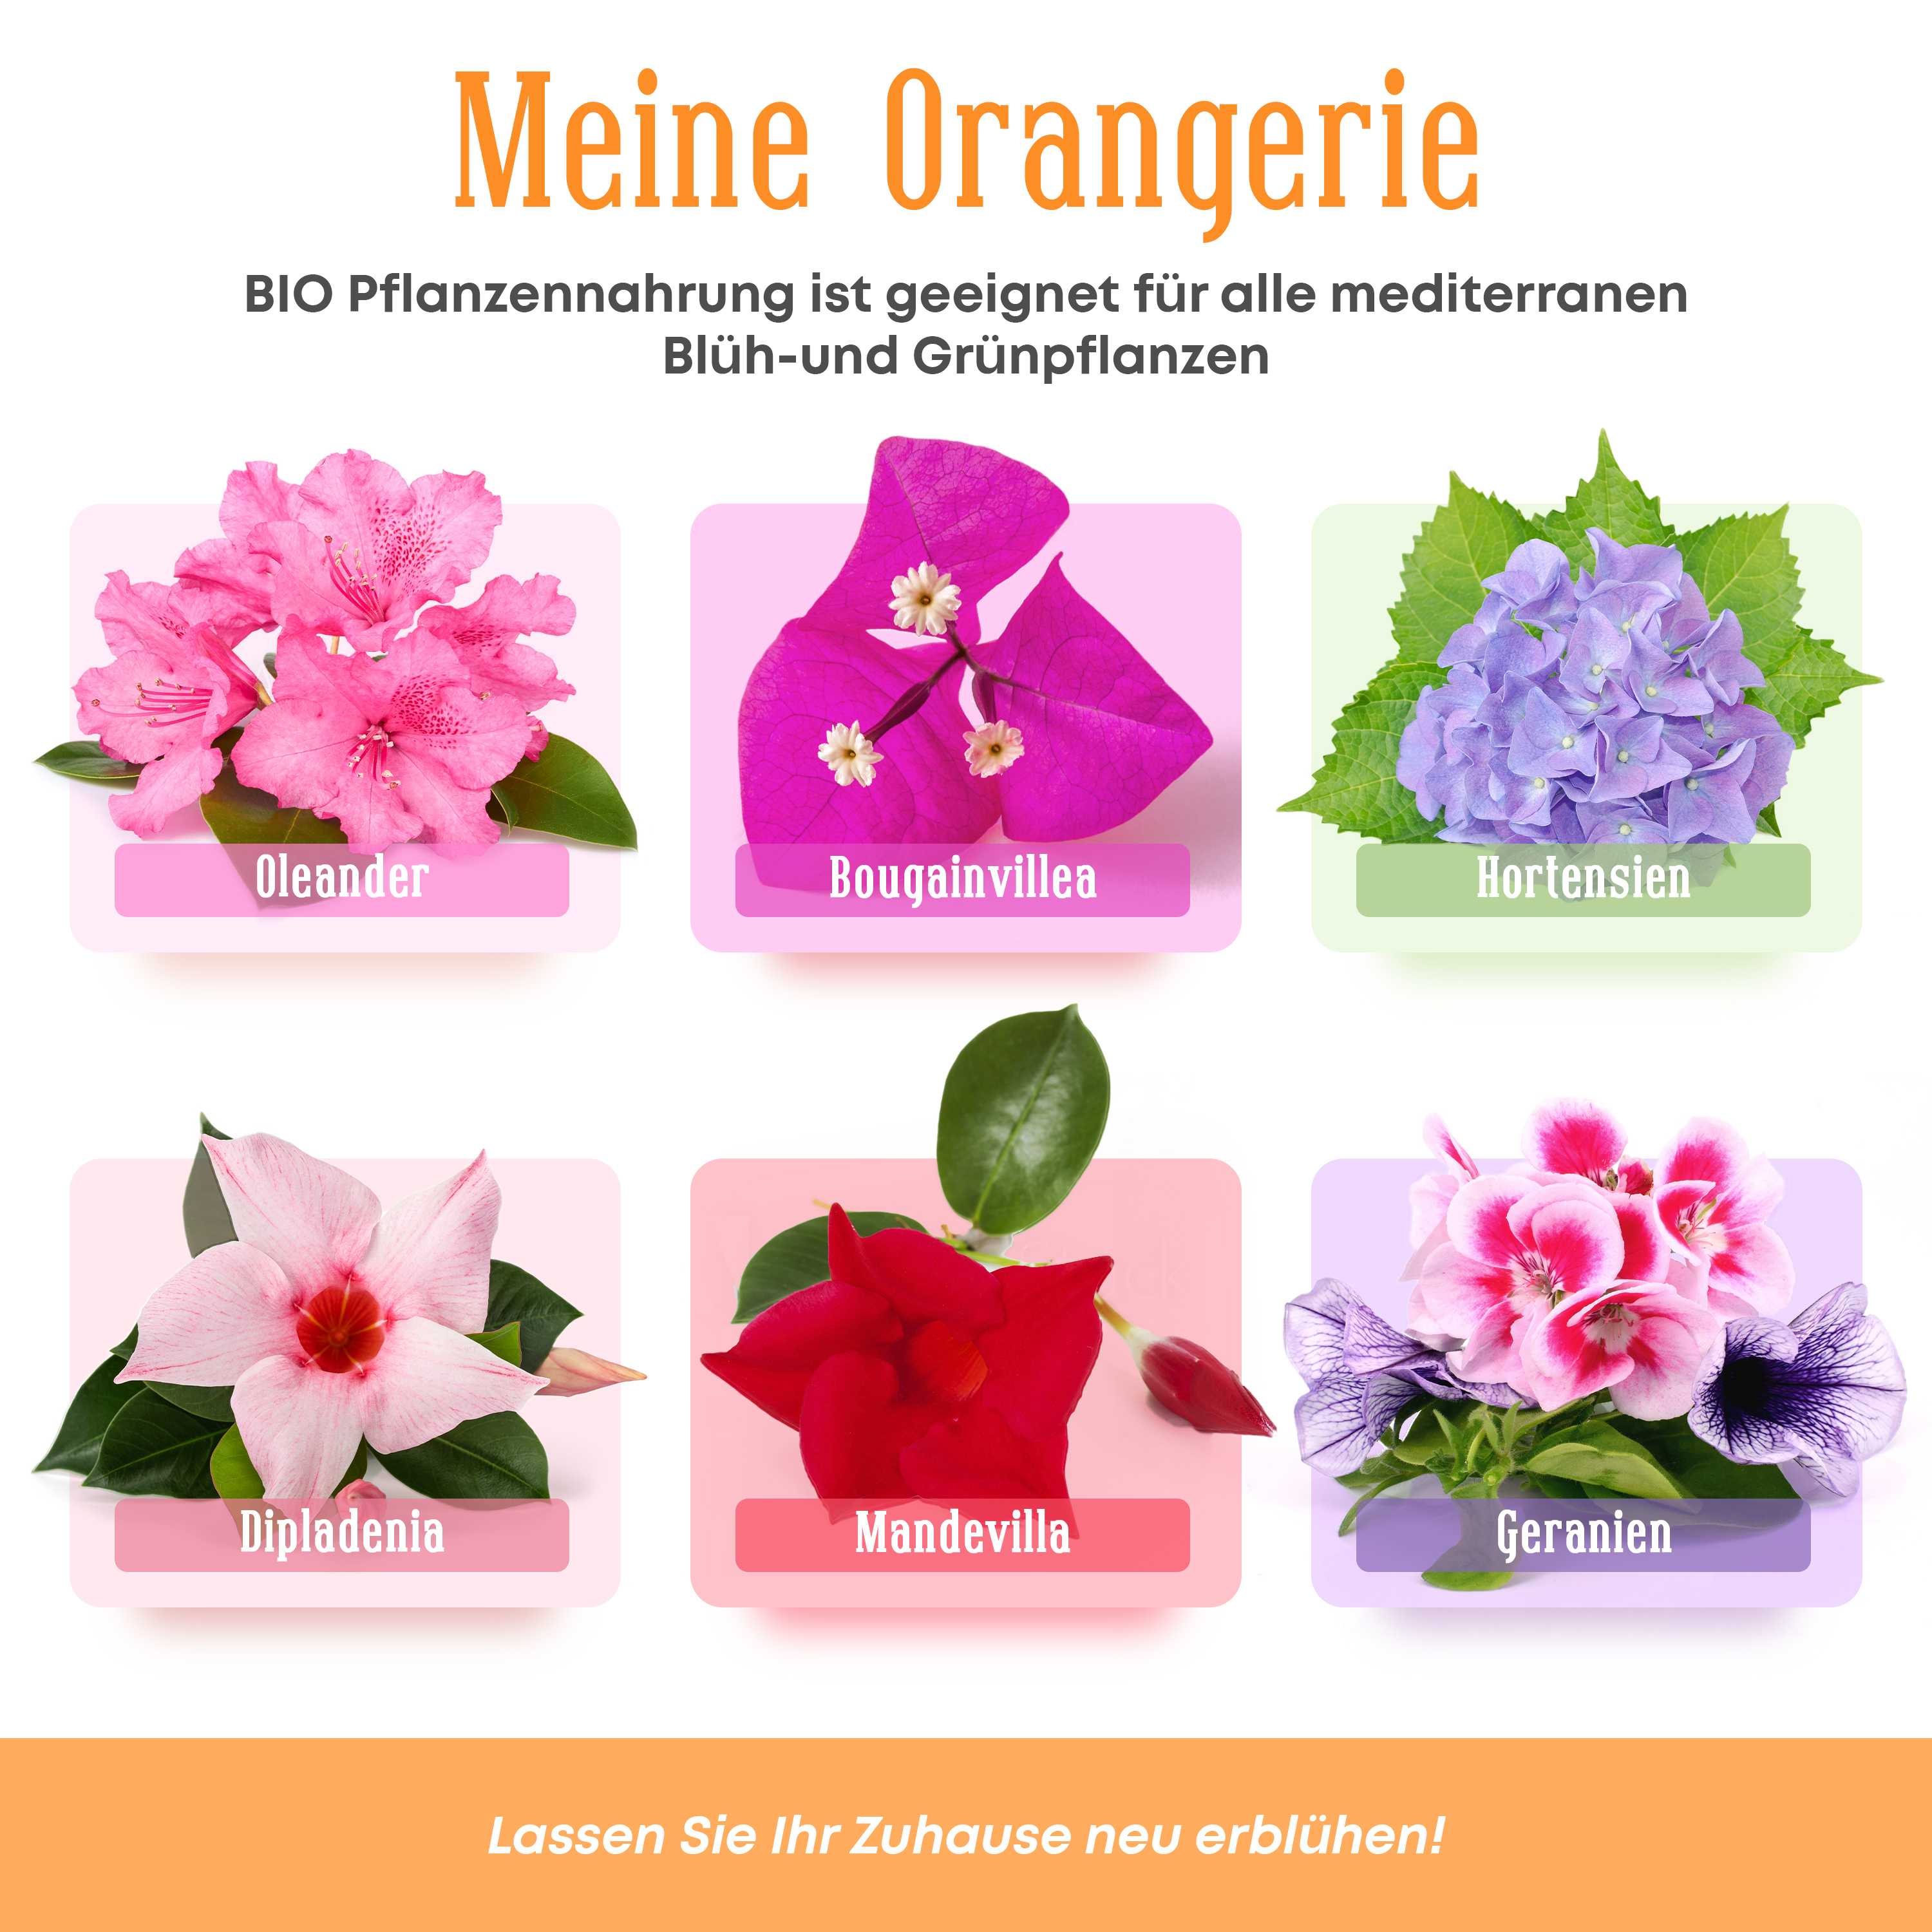 Meine Orangerie - BIO-Pflanzennahrung - veganer Flüssigdünger für mediterrane Pflanzen